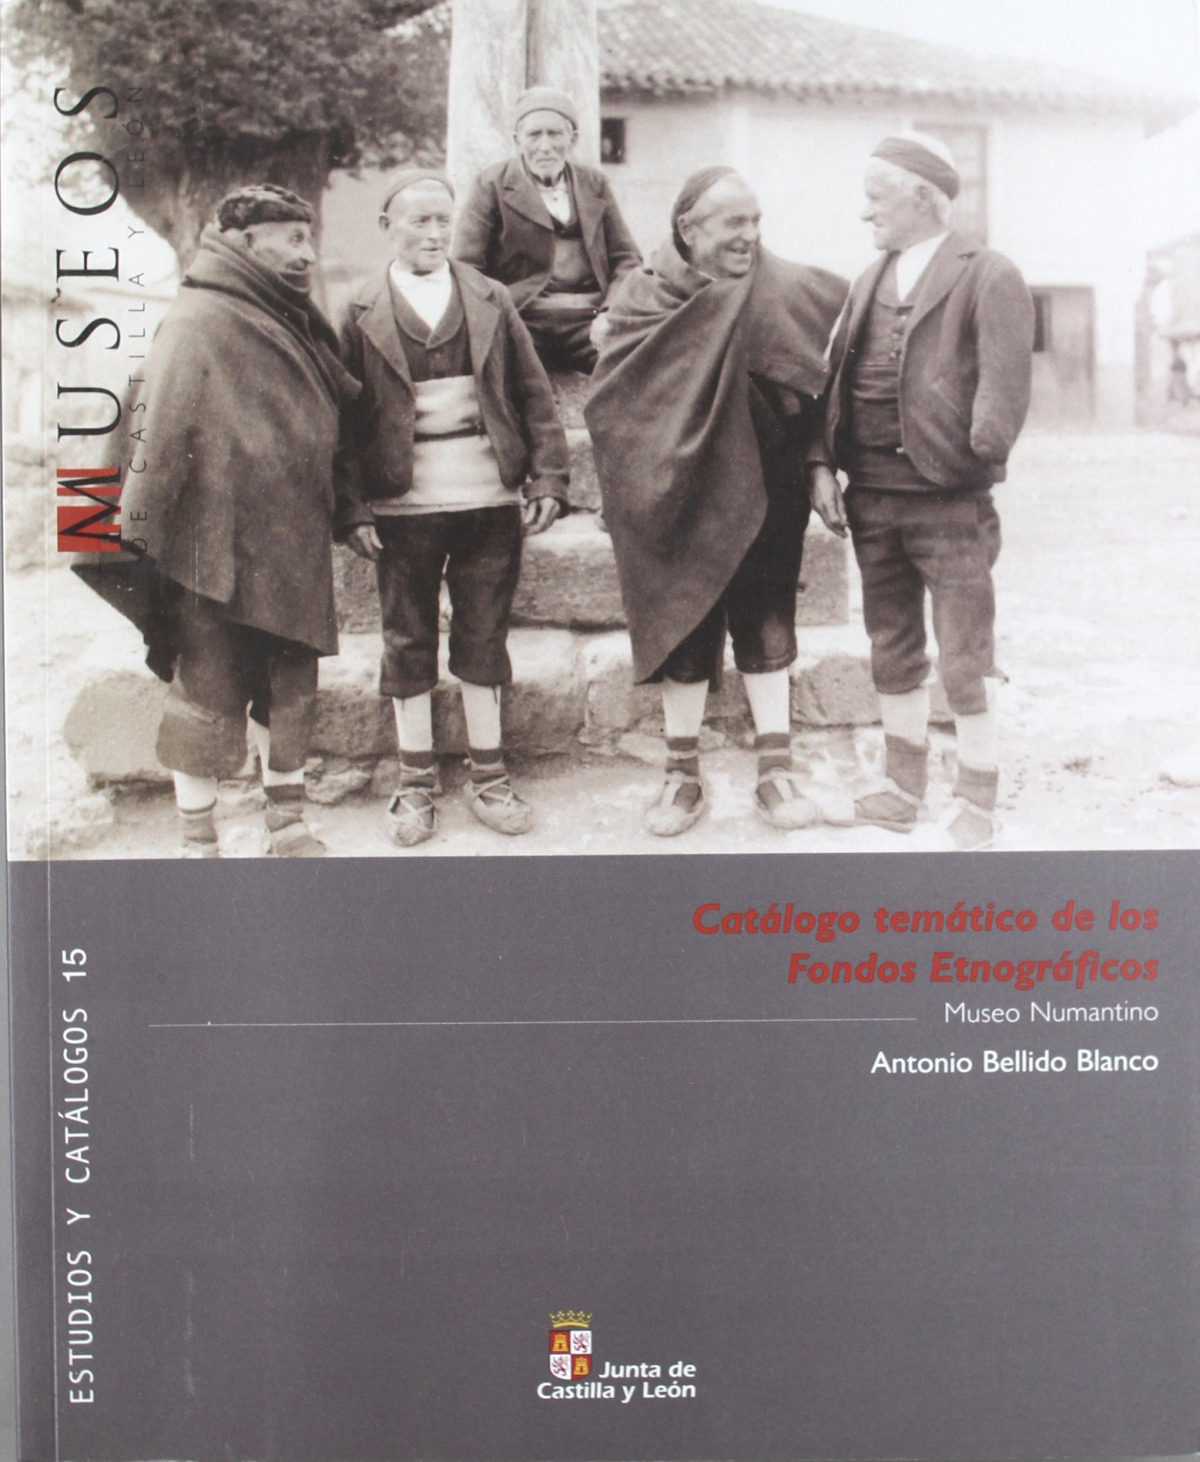 Catalogo tematico fondos etnograficos - Bellido, Antonio